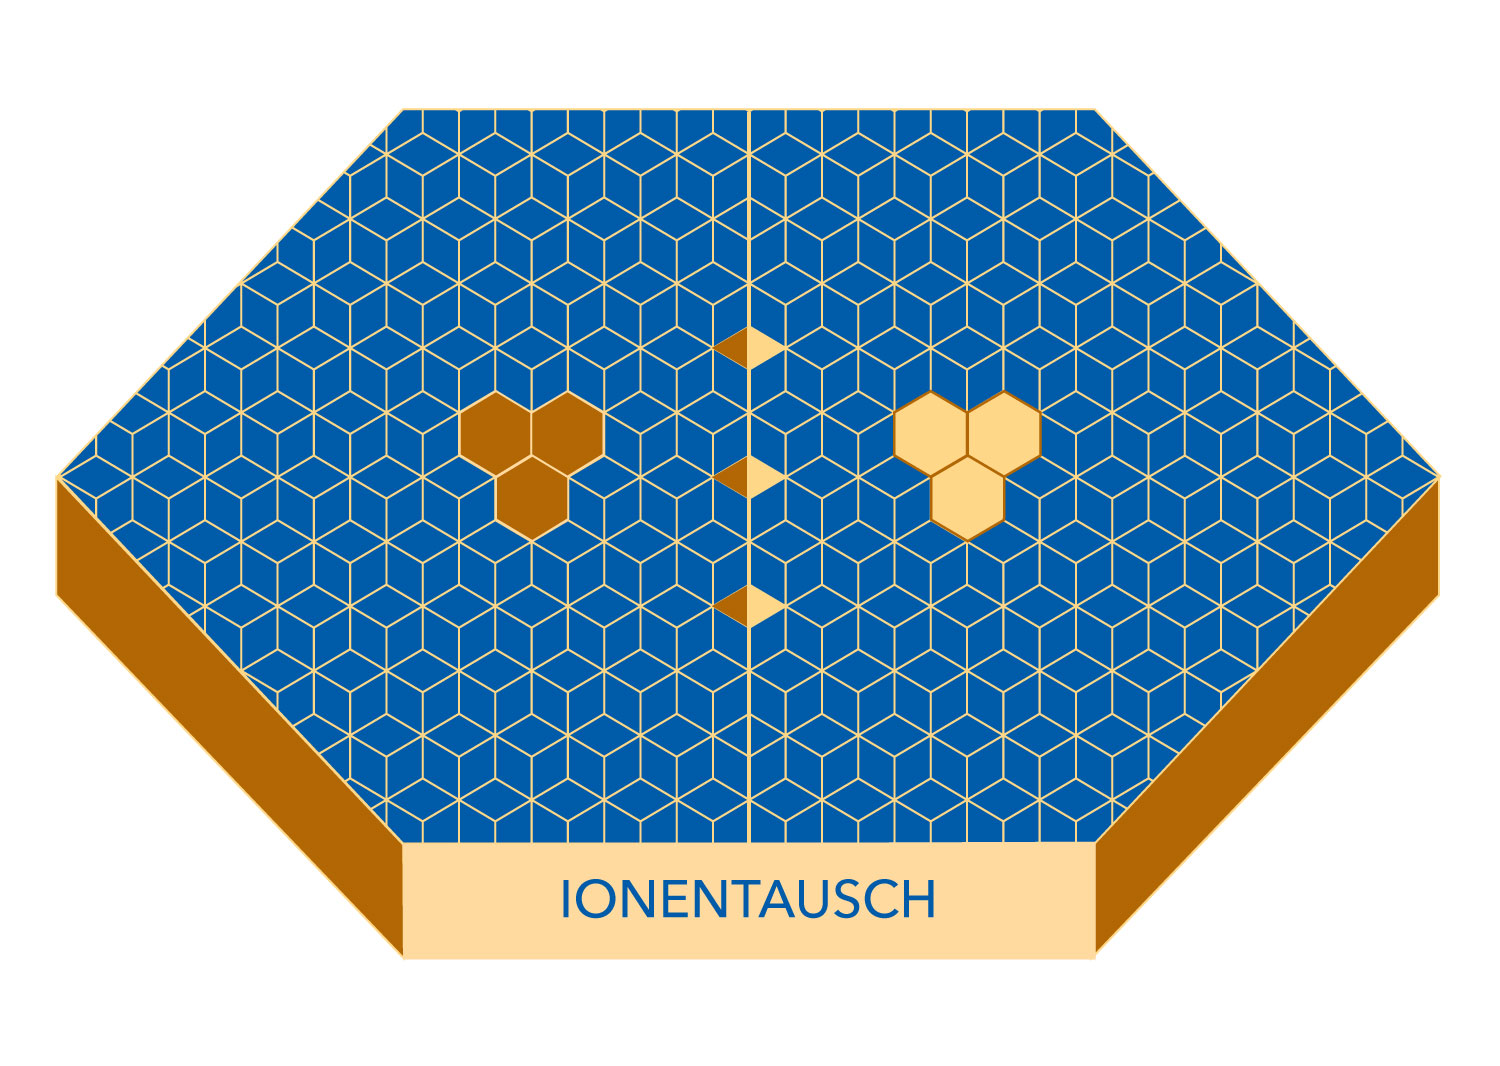 Ionentauscher-final09062021-RGB